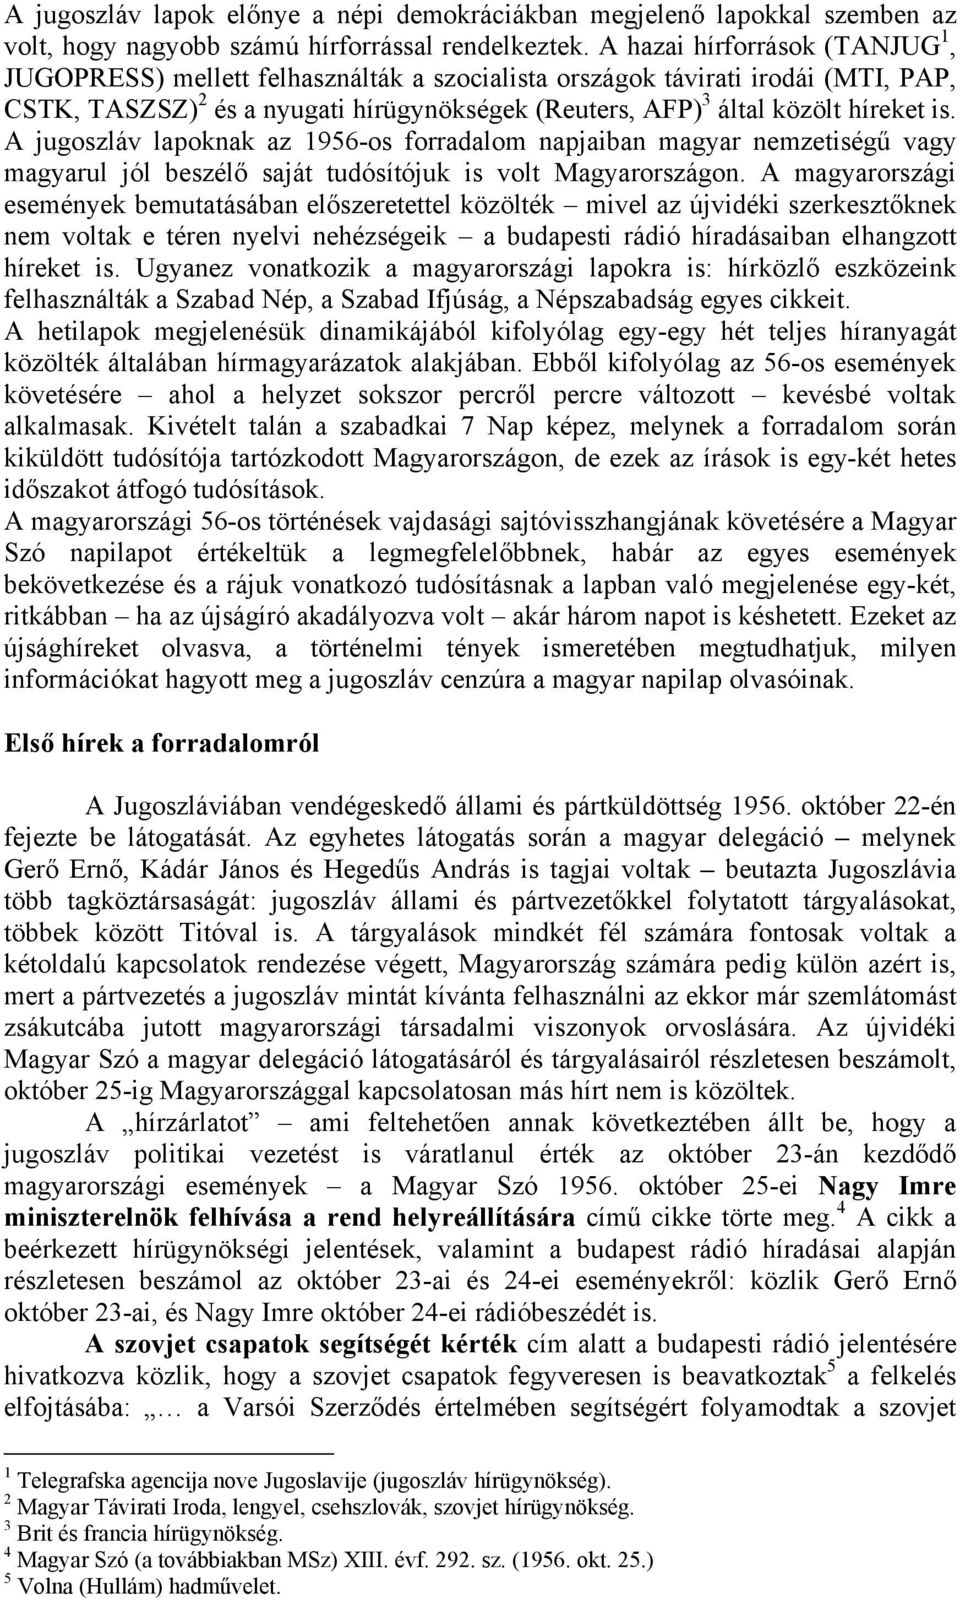 A jugoszláv lapoknak az 1956-os forradalom napjaiban magyar nemzetiségő vagy magyarul jól beszélı saját tudósítójuk is volt Magyarországon.